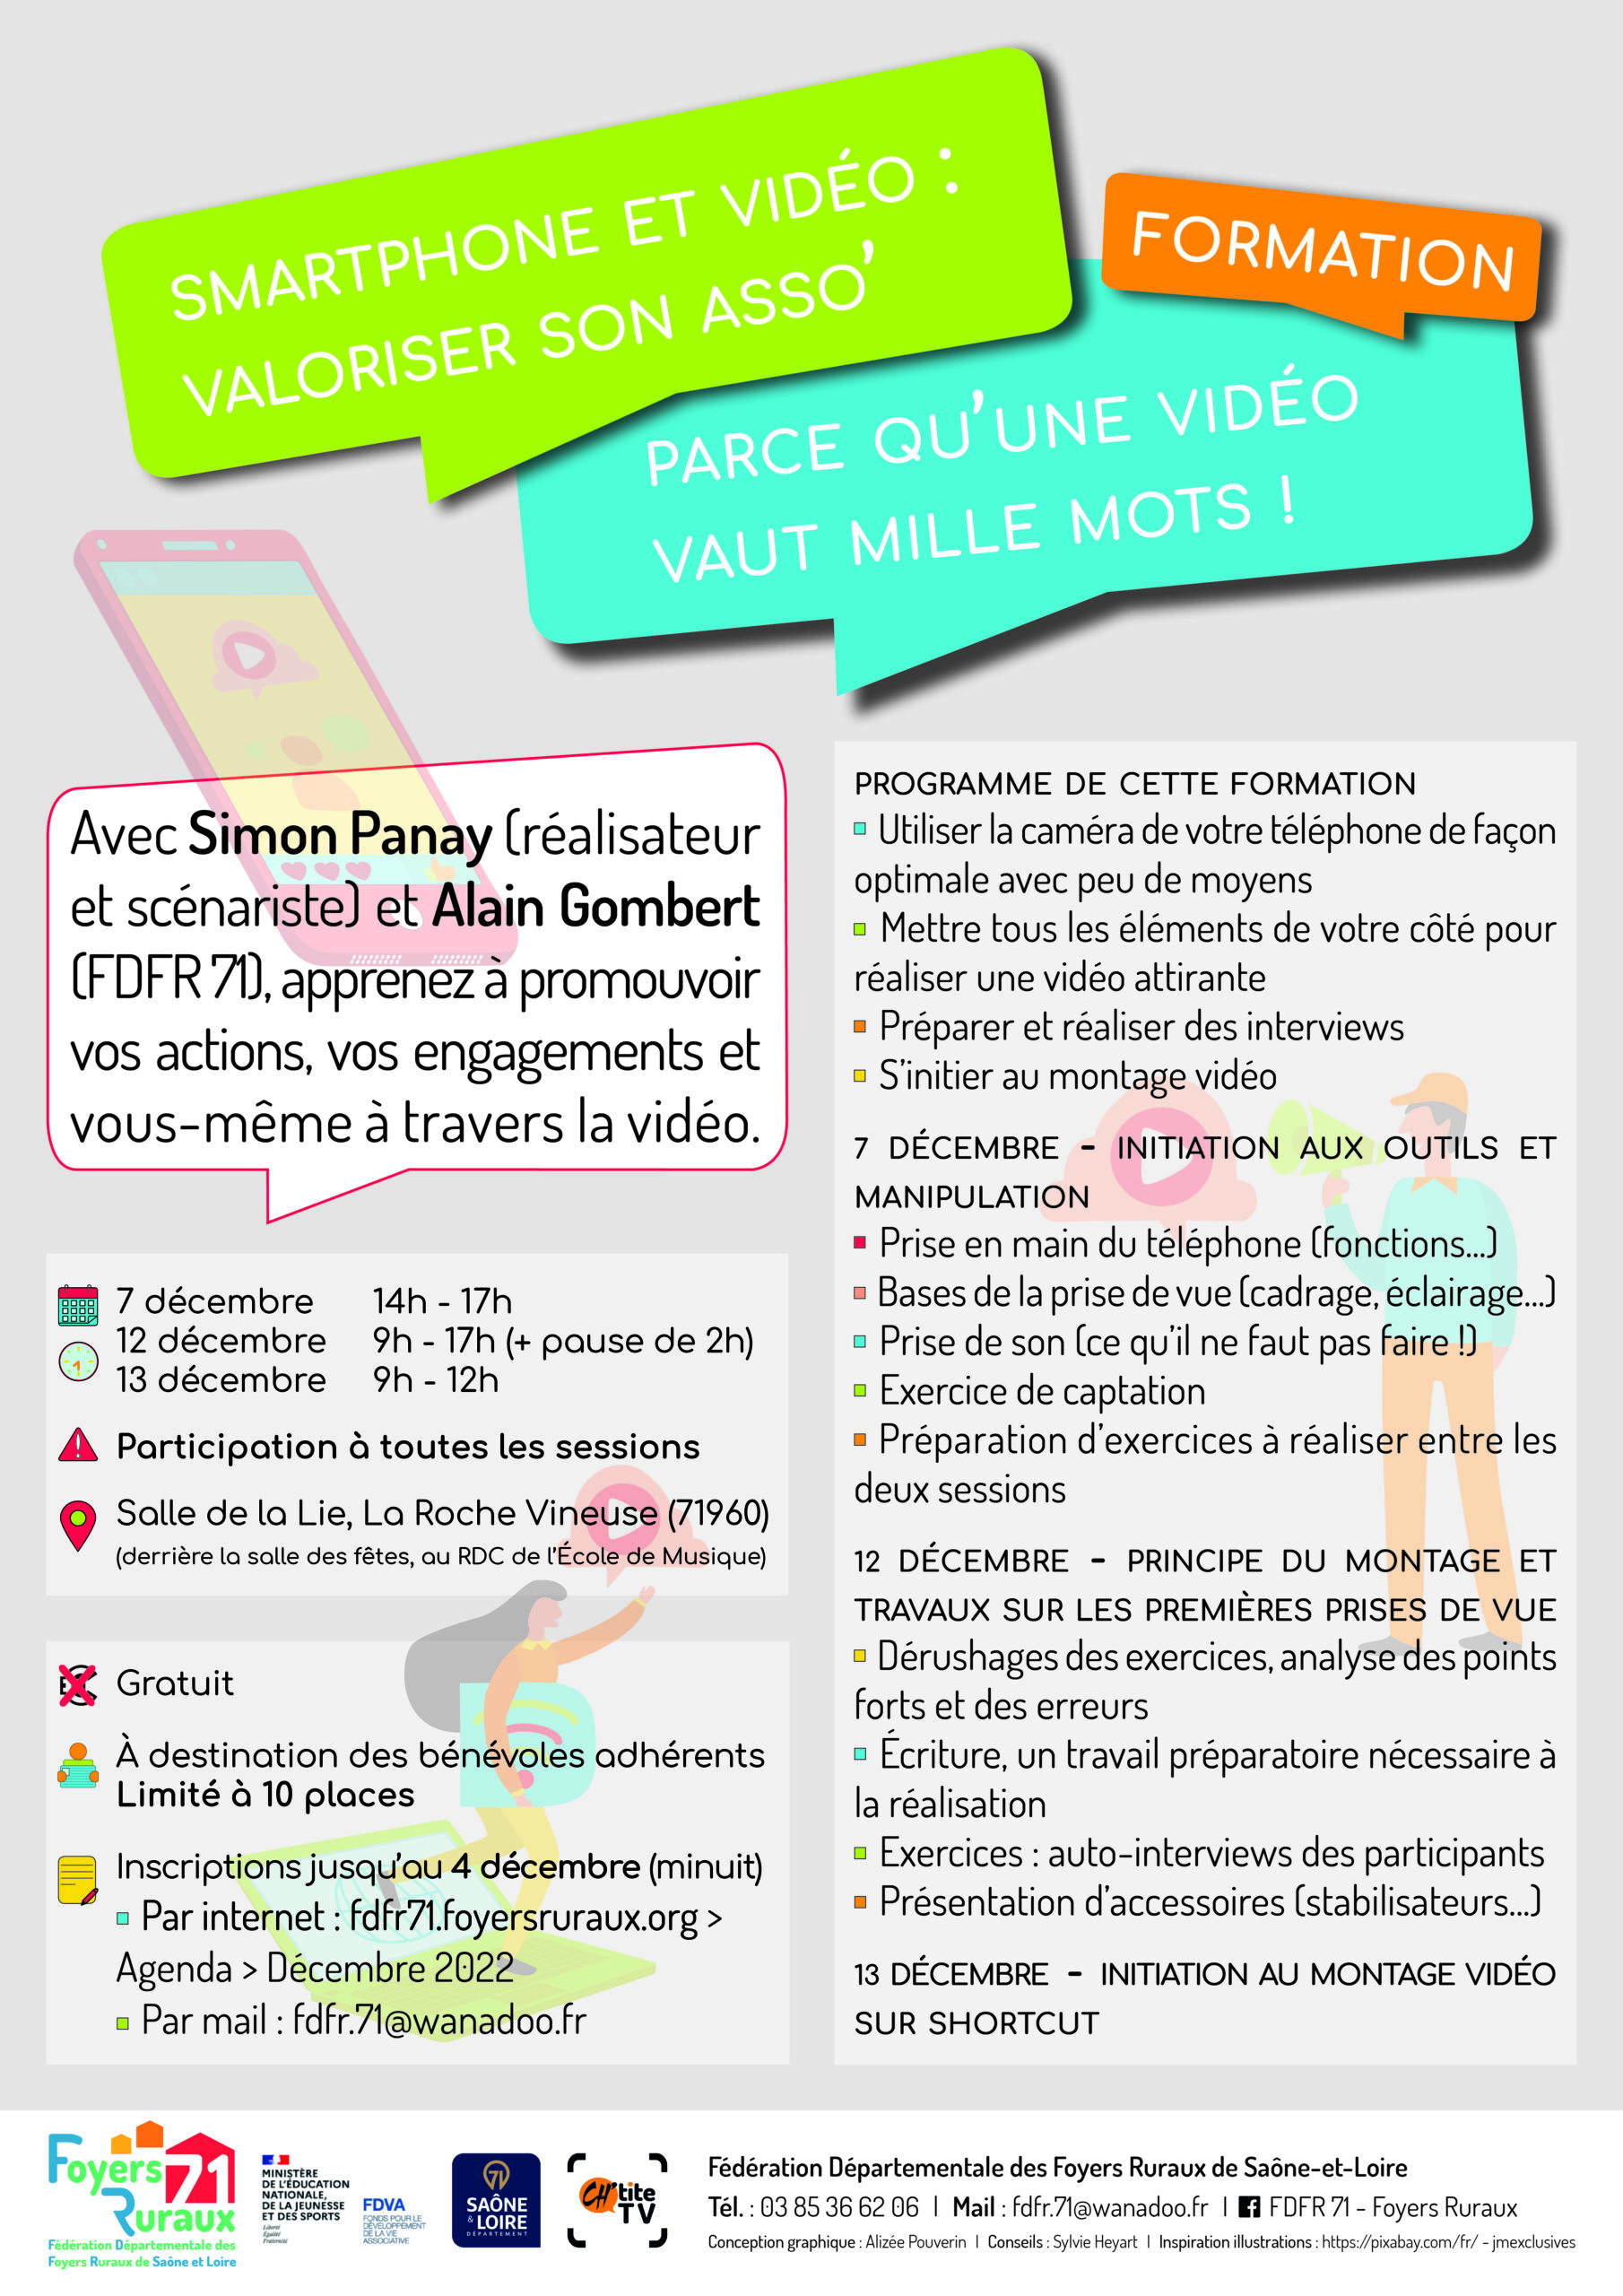 Formation smartphone et vidéo à La Roche Vineuse (7, 12 et 13 décembre)